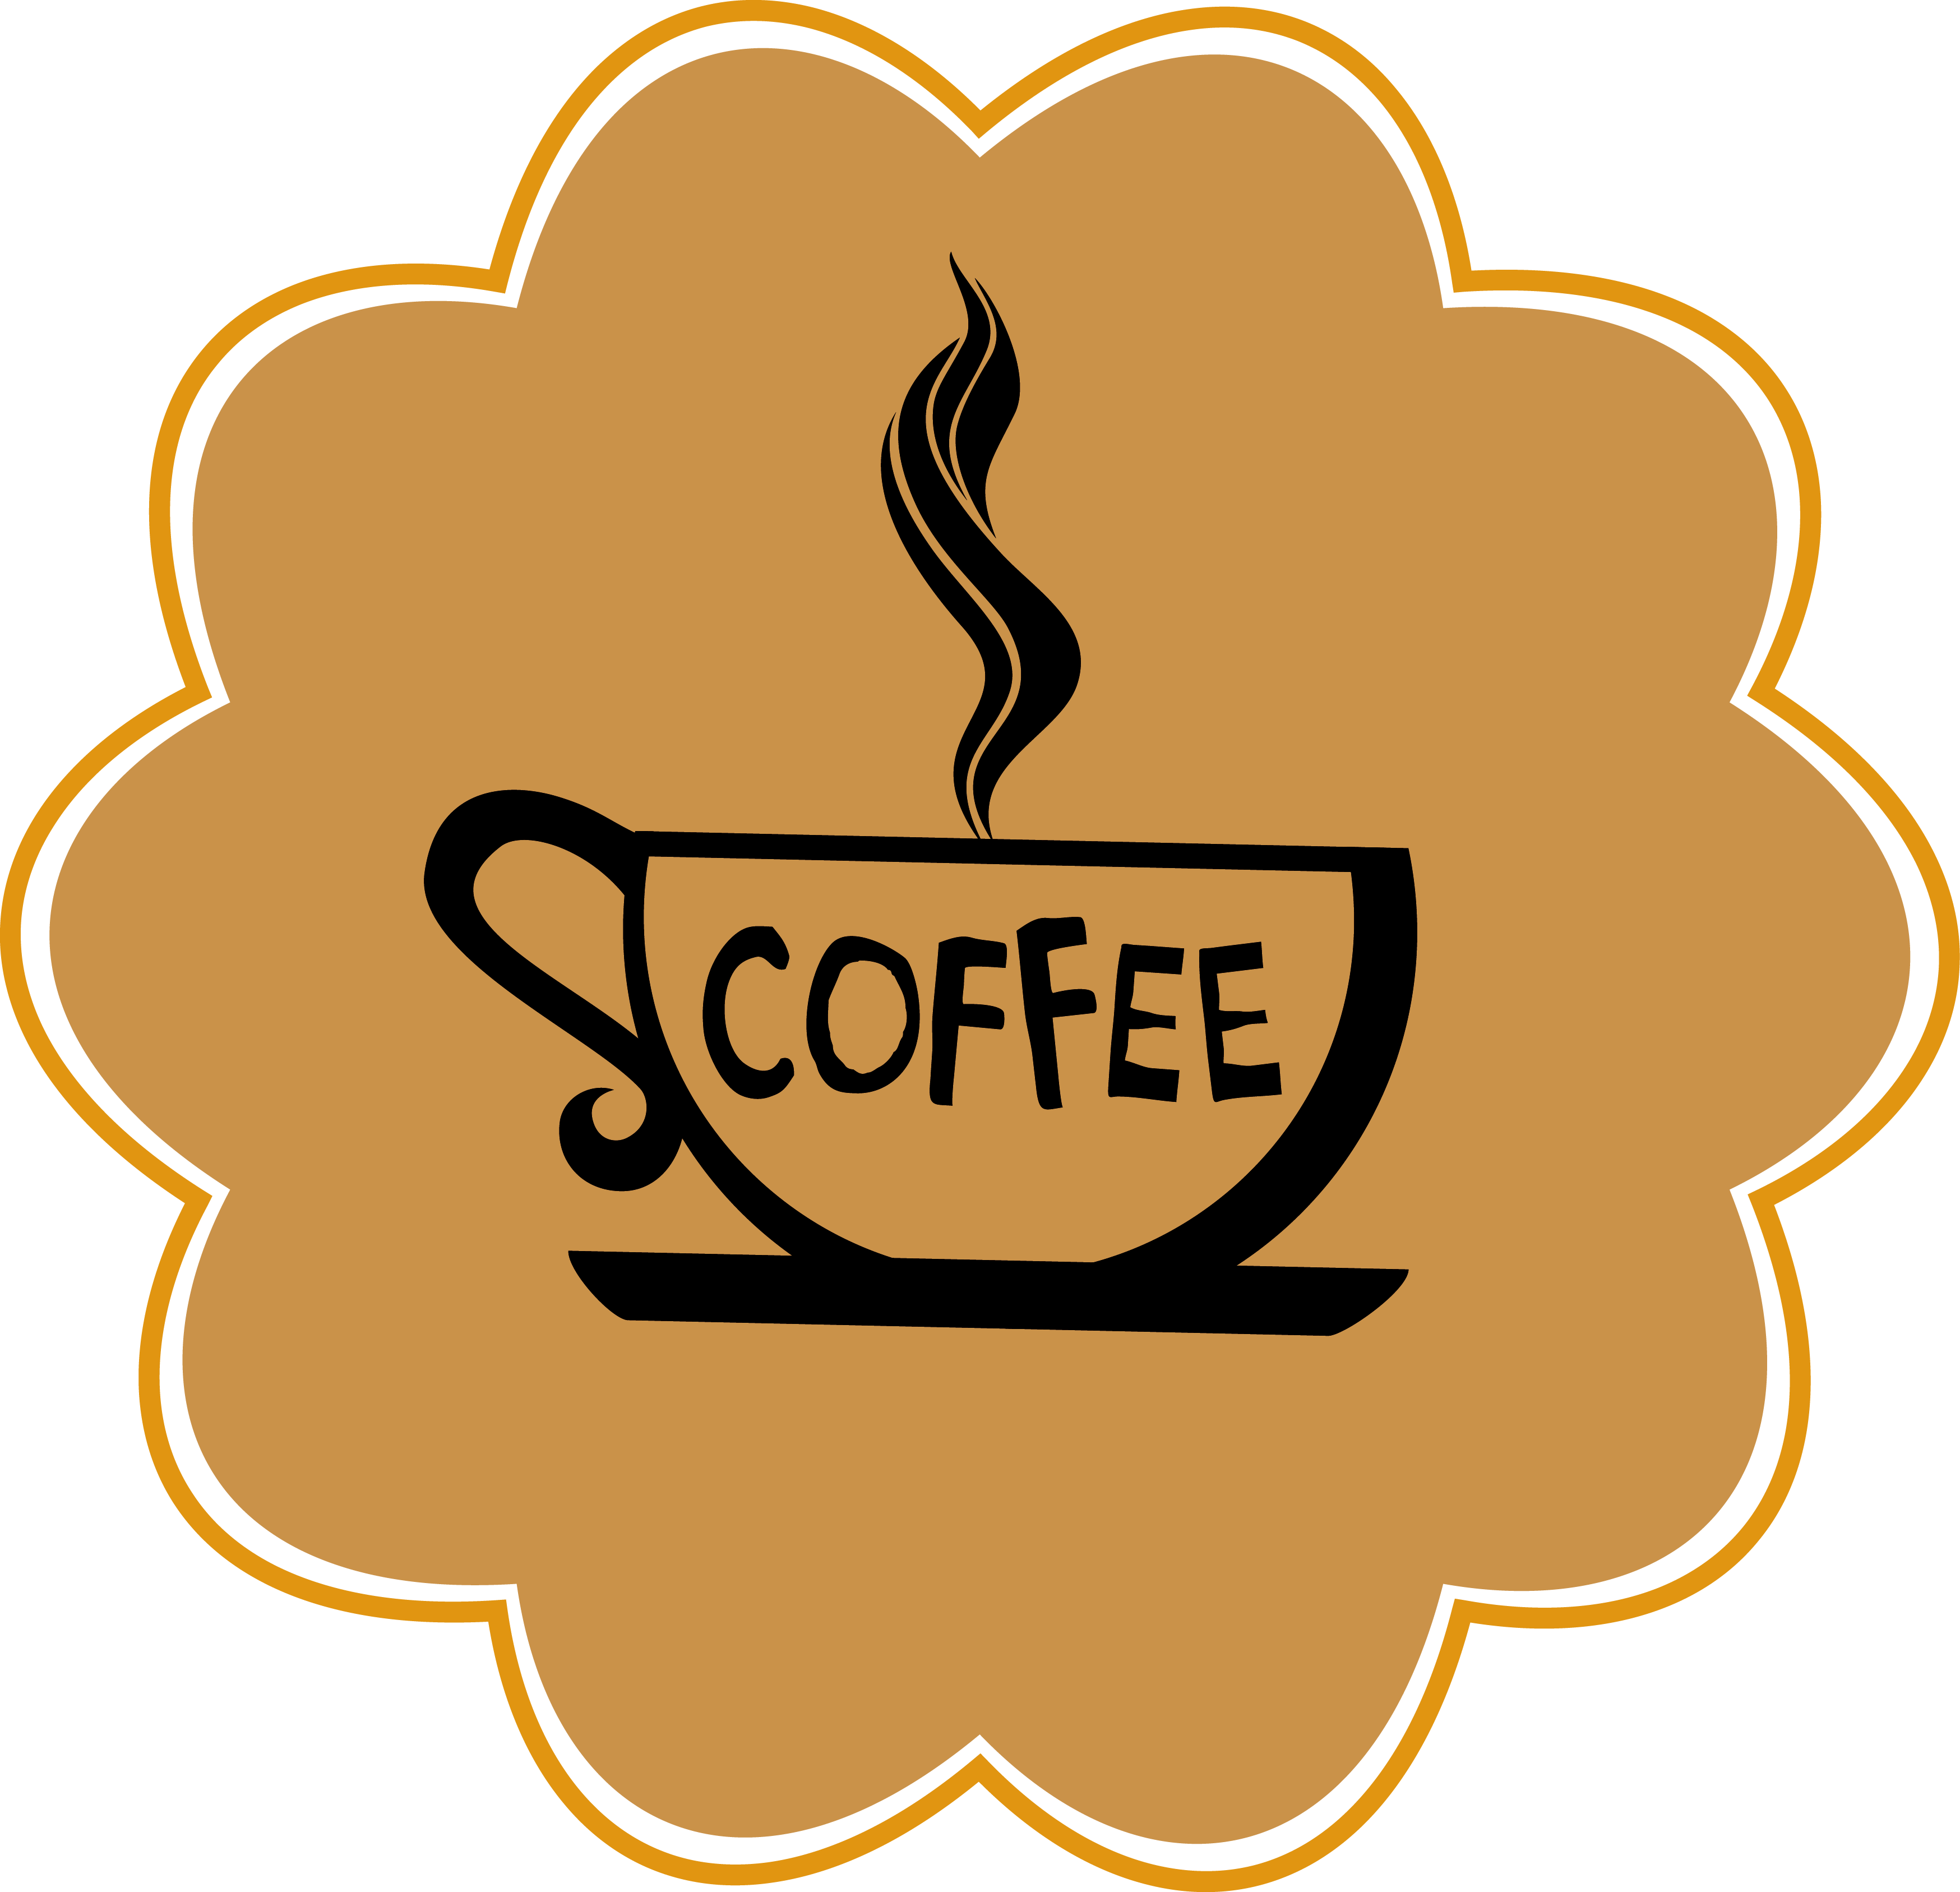 Coffee Espresso Tea Cafe - Coffee Espresso Tea Cafe (3496x3374)